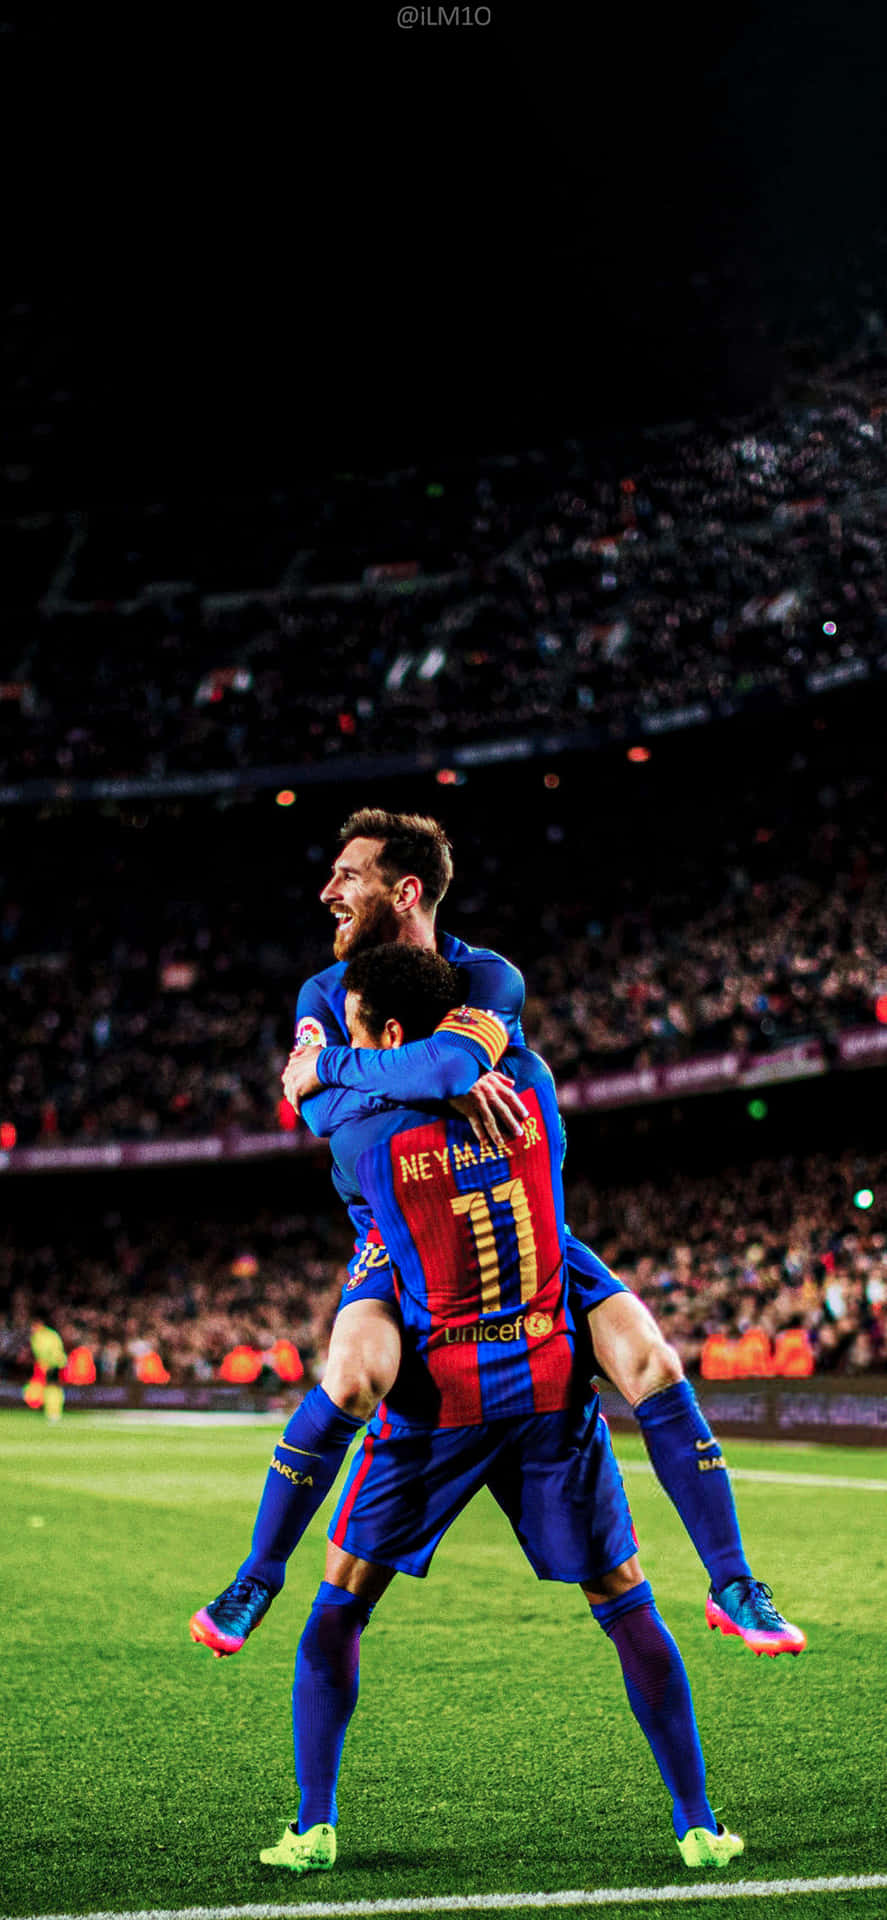 Hình nền Messi và Neymar đẹp lung linh đã sẵn sàng để tải về. Hai cầu thủ cực kỳ tài năng và nổi tiếng sẽ làm bạn ngưỡng mộ khi xem hình nền này. Sẵn sàng cho một trải nghiệm thị giác đầy màu sắc và cảm xúc.